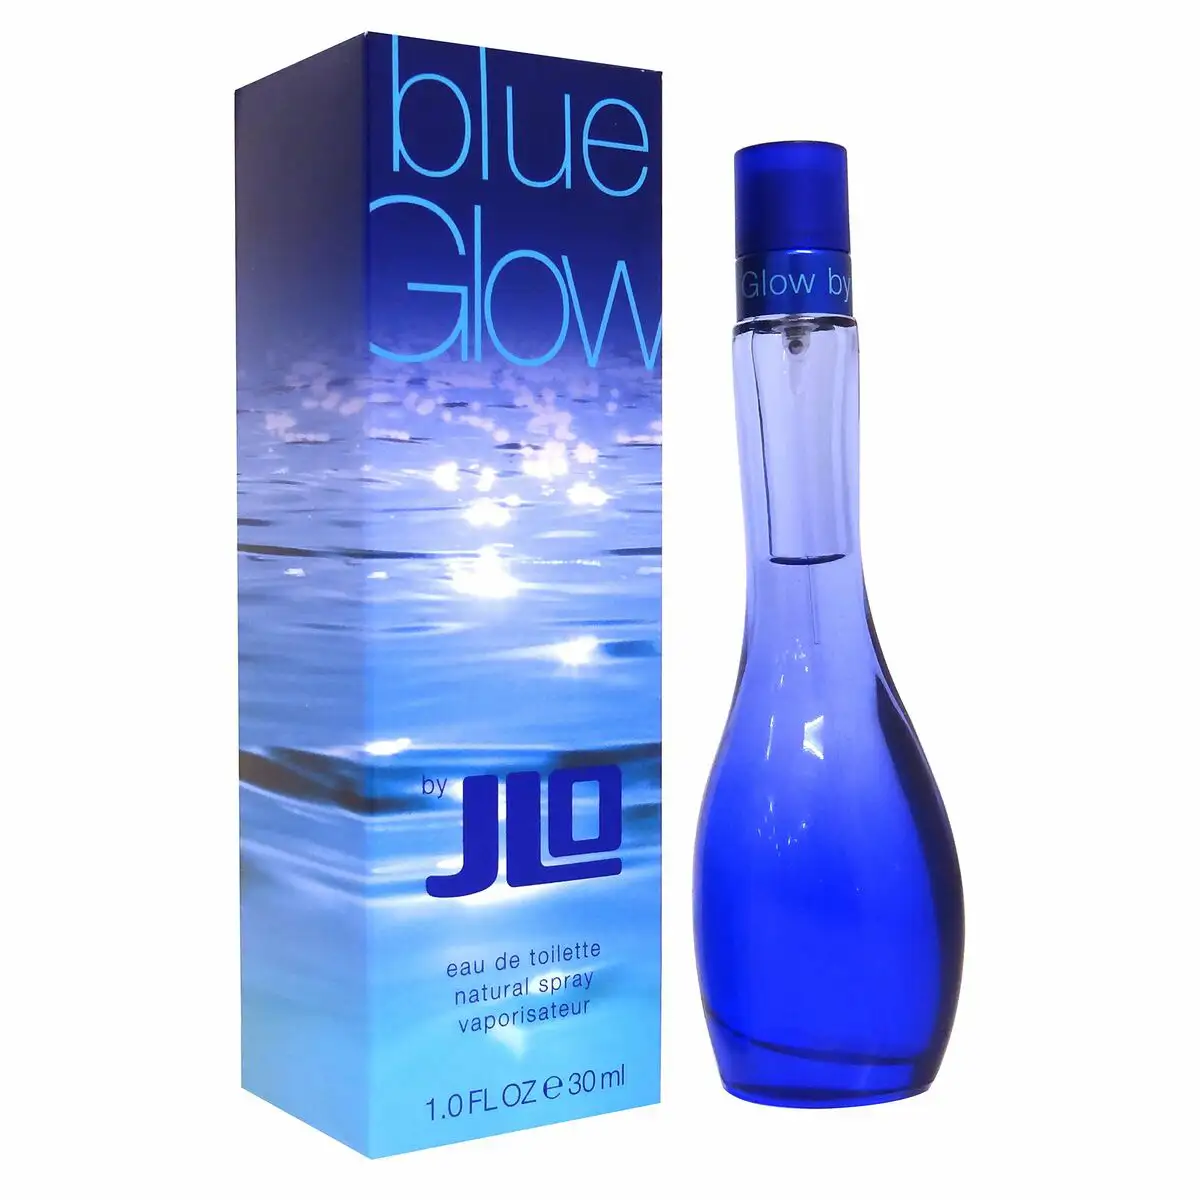 Parfum femme edt jennifer lopez blue glow by jlo 30 ml_4346. Bienvenue chez DIAYTAR SENEGAL - Où Chaque Achat Fait une Différence. Découvrez notre gamme de produits qui reflètent l'engagement envers la qualité et le respect de l'environnement.